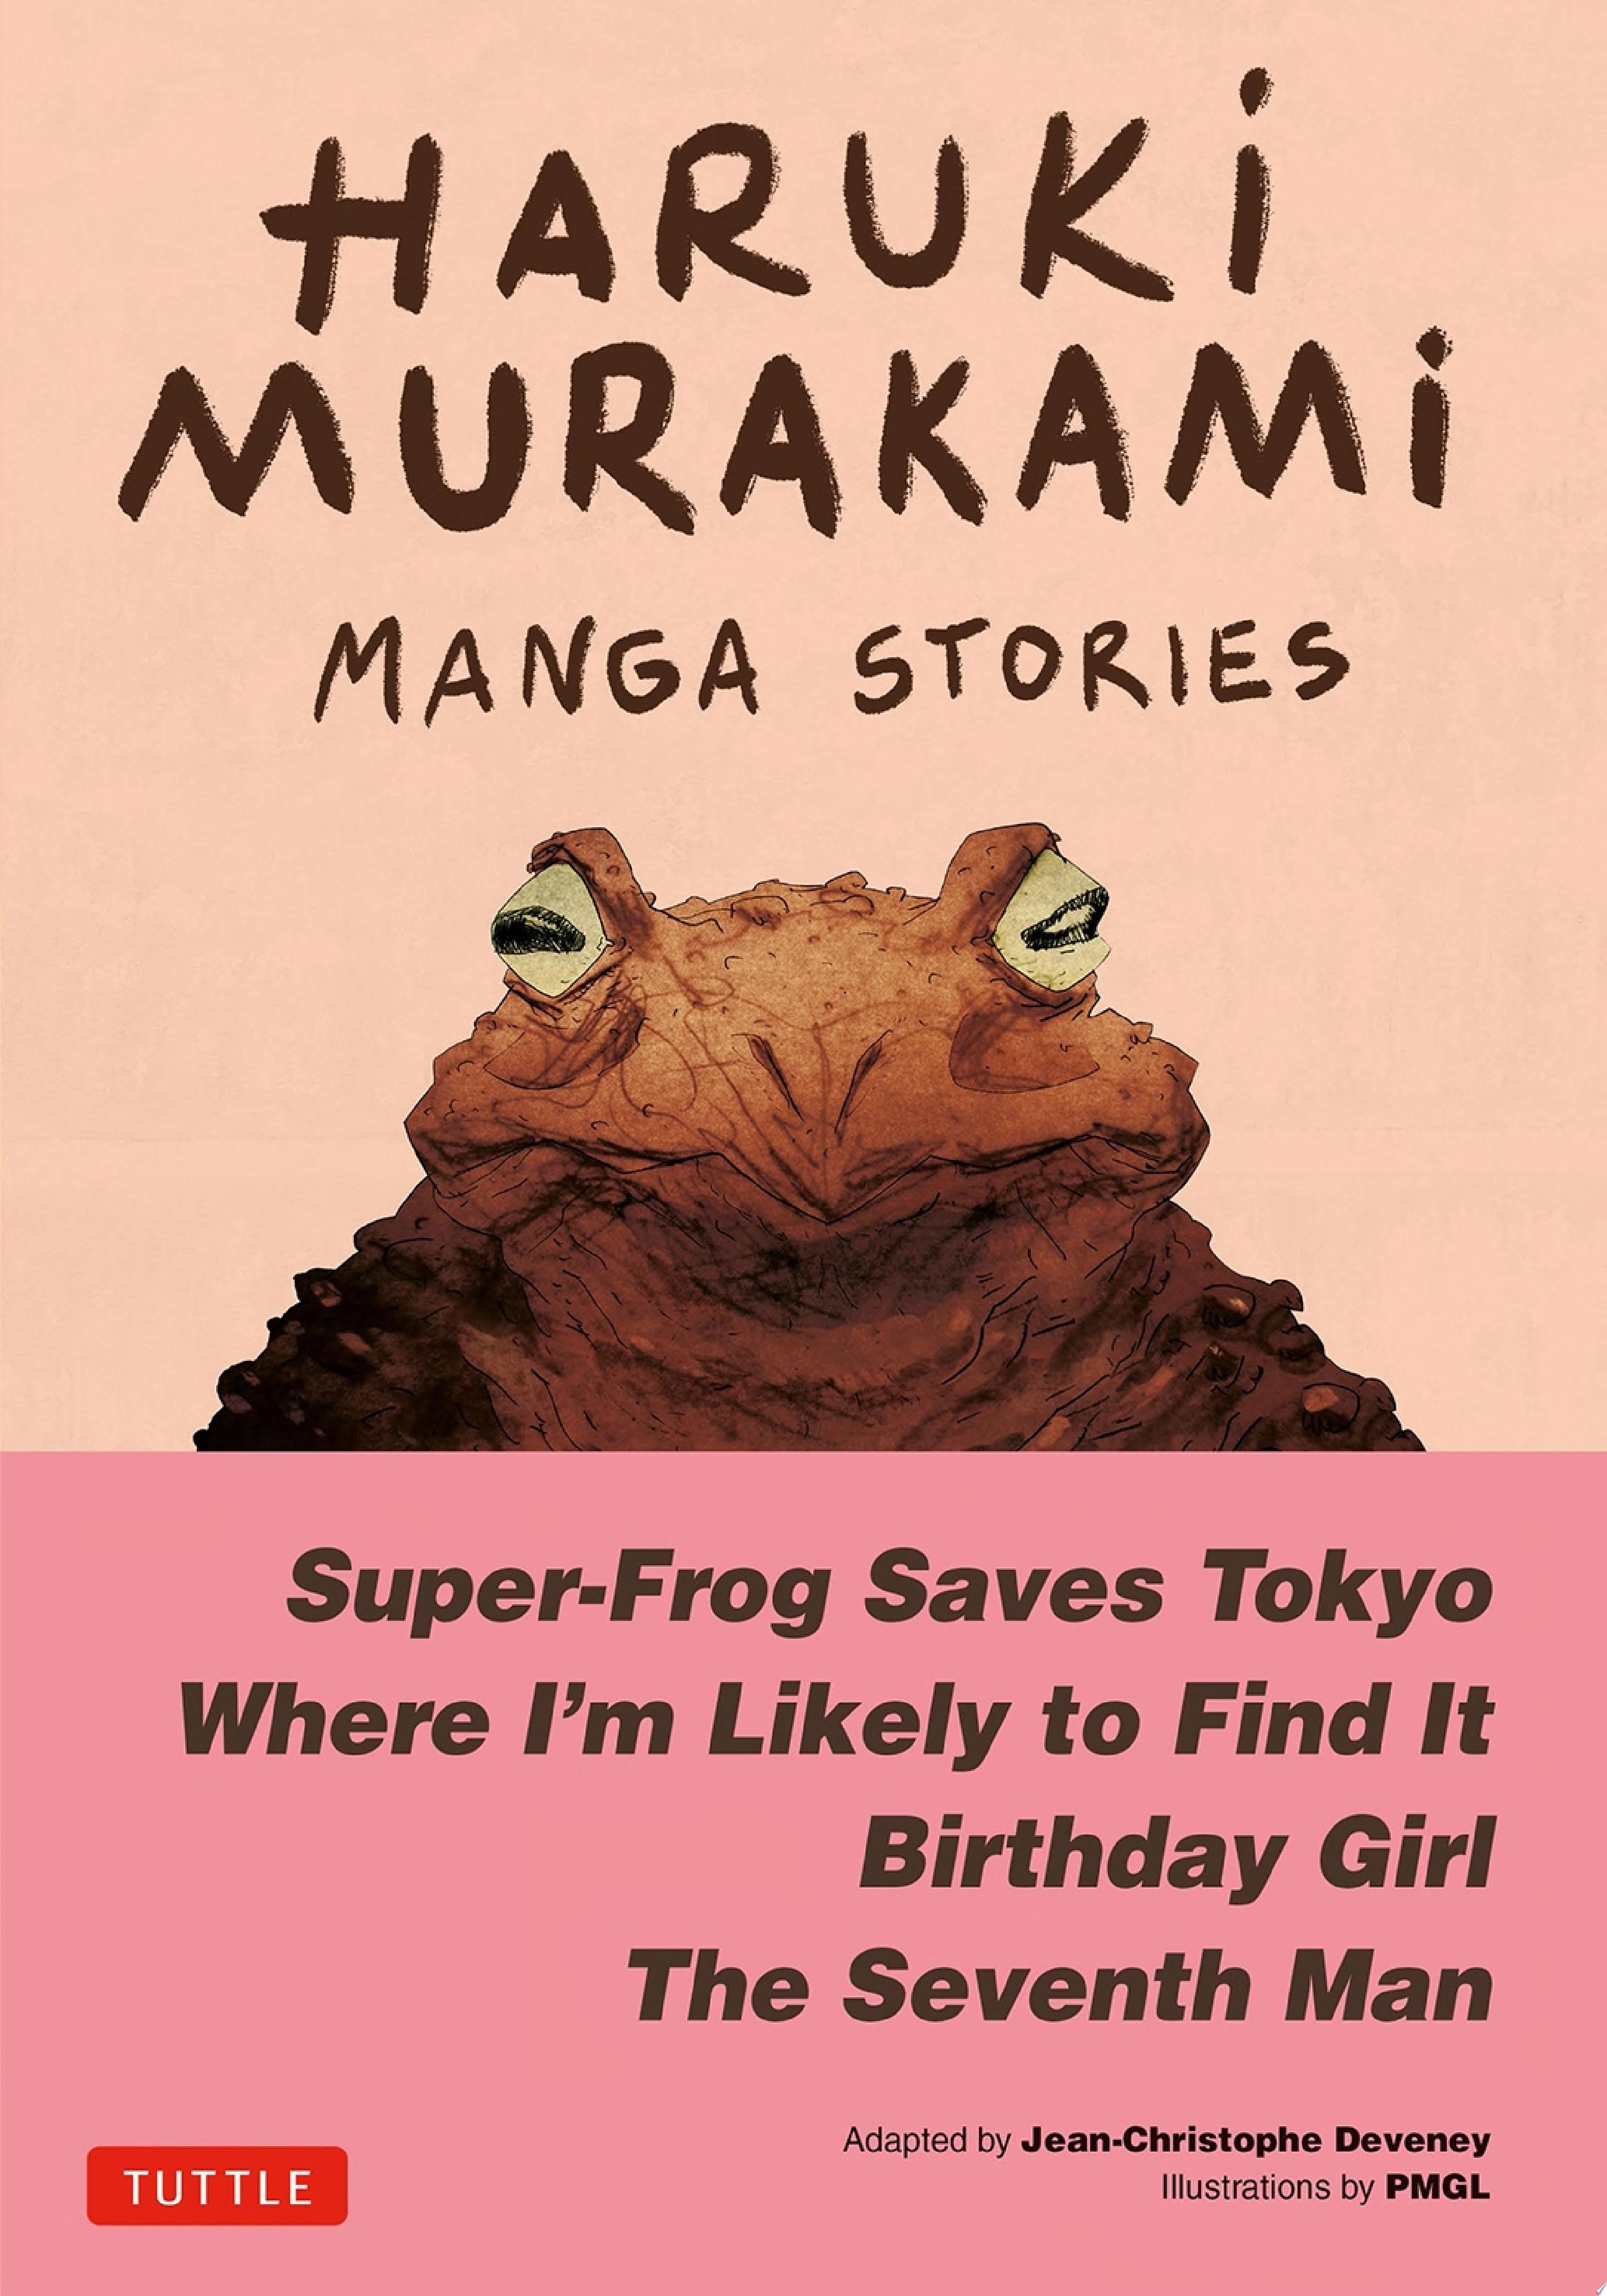 Image for "Haruki Murakami Manga Stories 1"